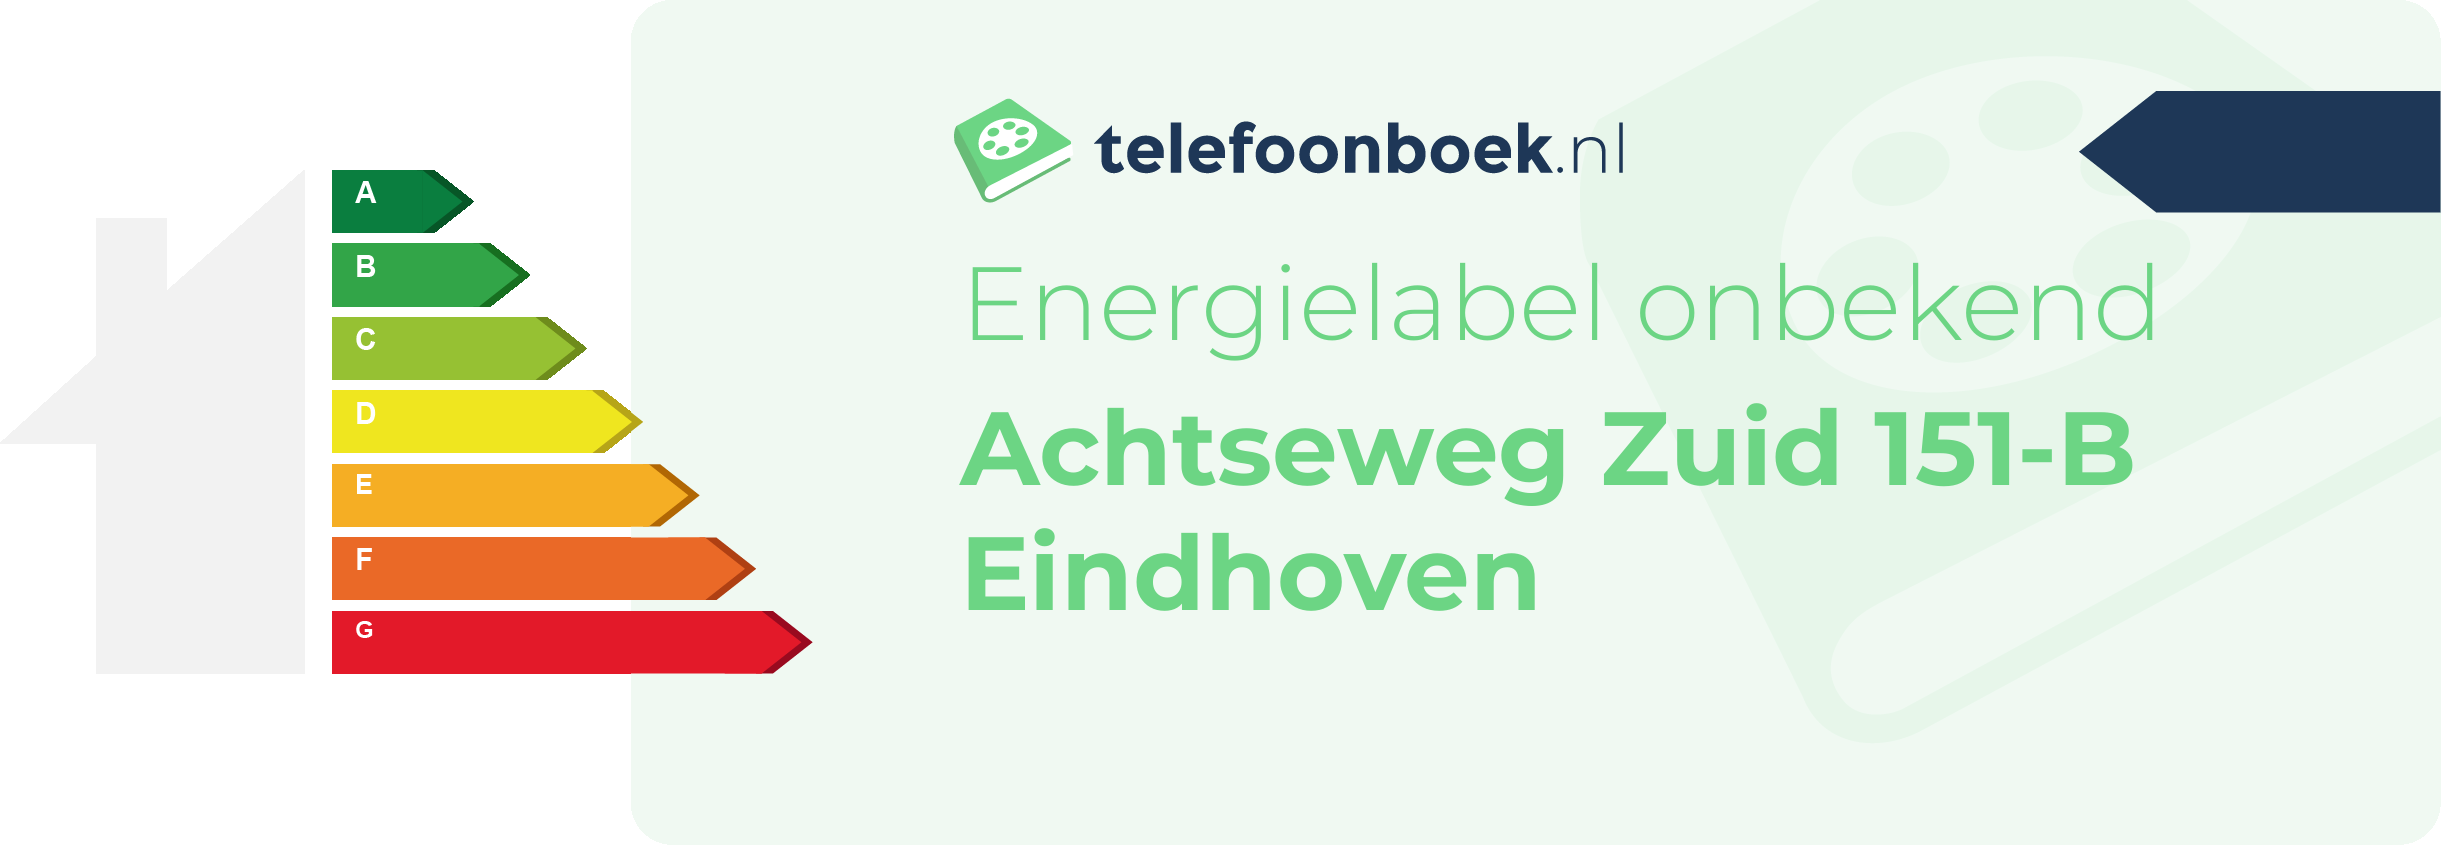 Energielabel Achtseweg Zuid 151-B Eindhoven